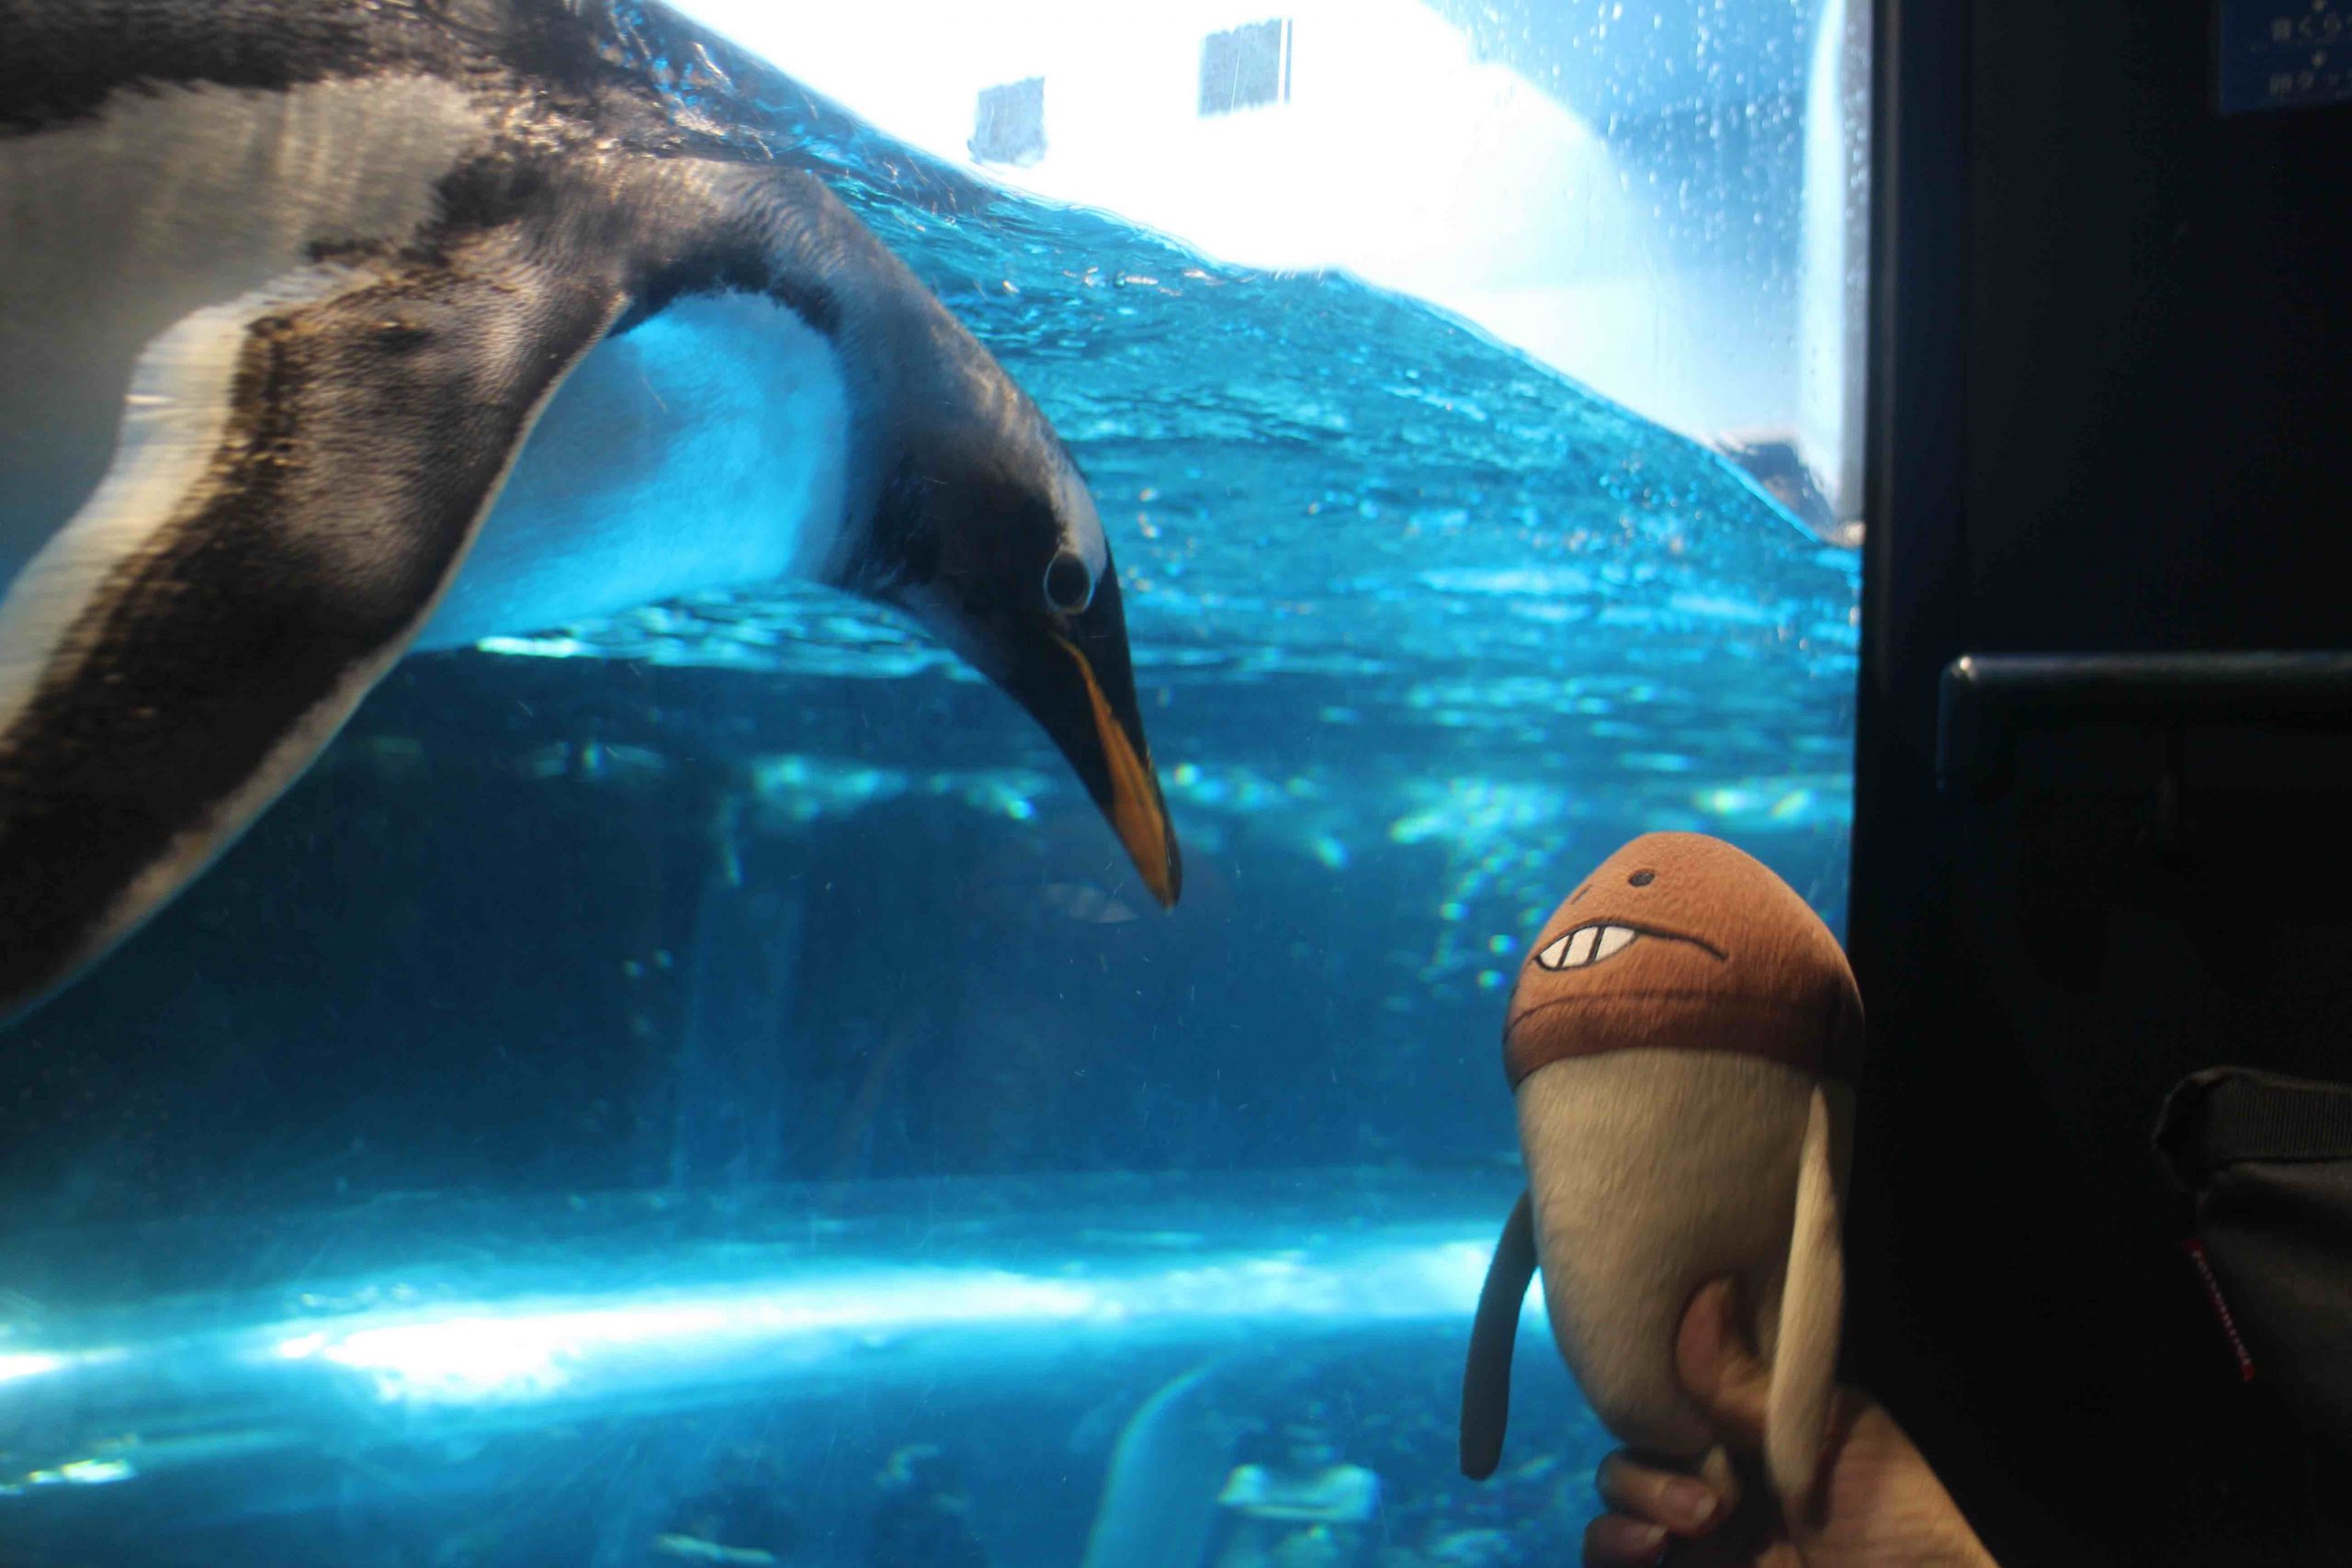 森の生活的水族館/海に住むほ乳類や空飛ぶペンギンとの対話:動画あり@下関・海響館